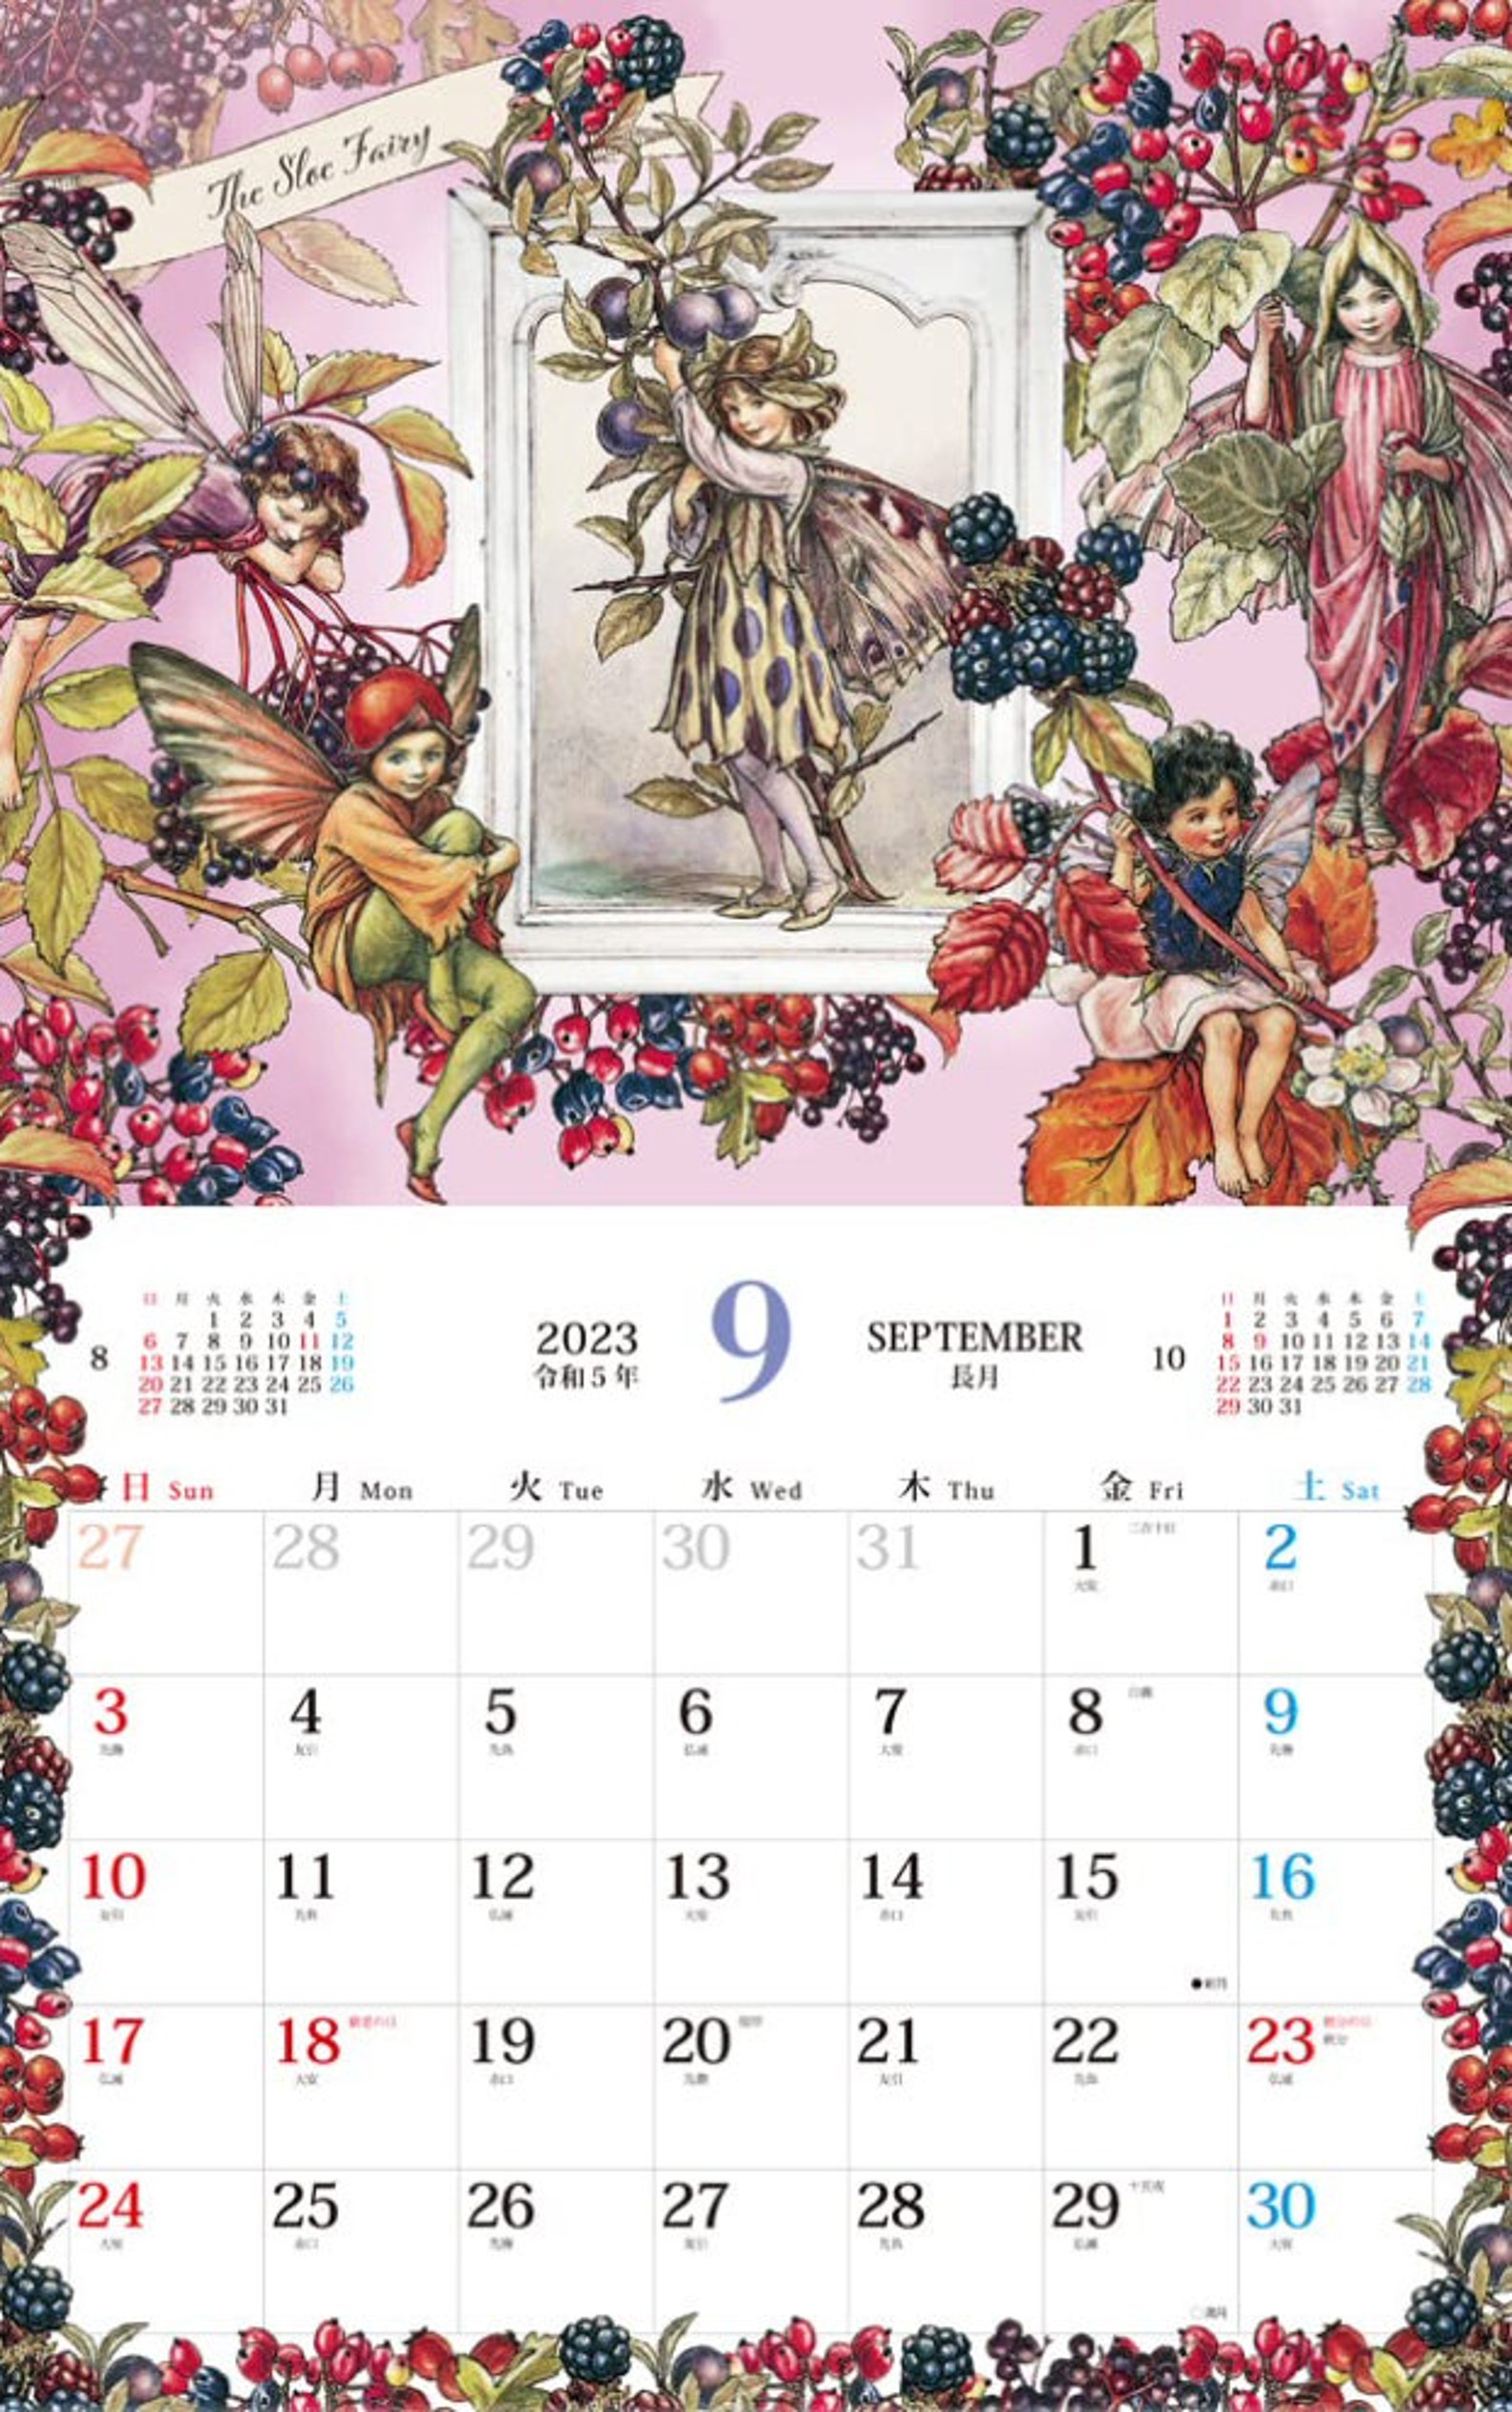 NEW Cicely Mary Barker FLOWER FAIRIES Calendar 2023 Wall - Etsy